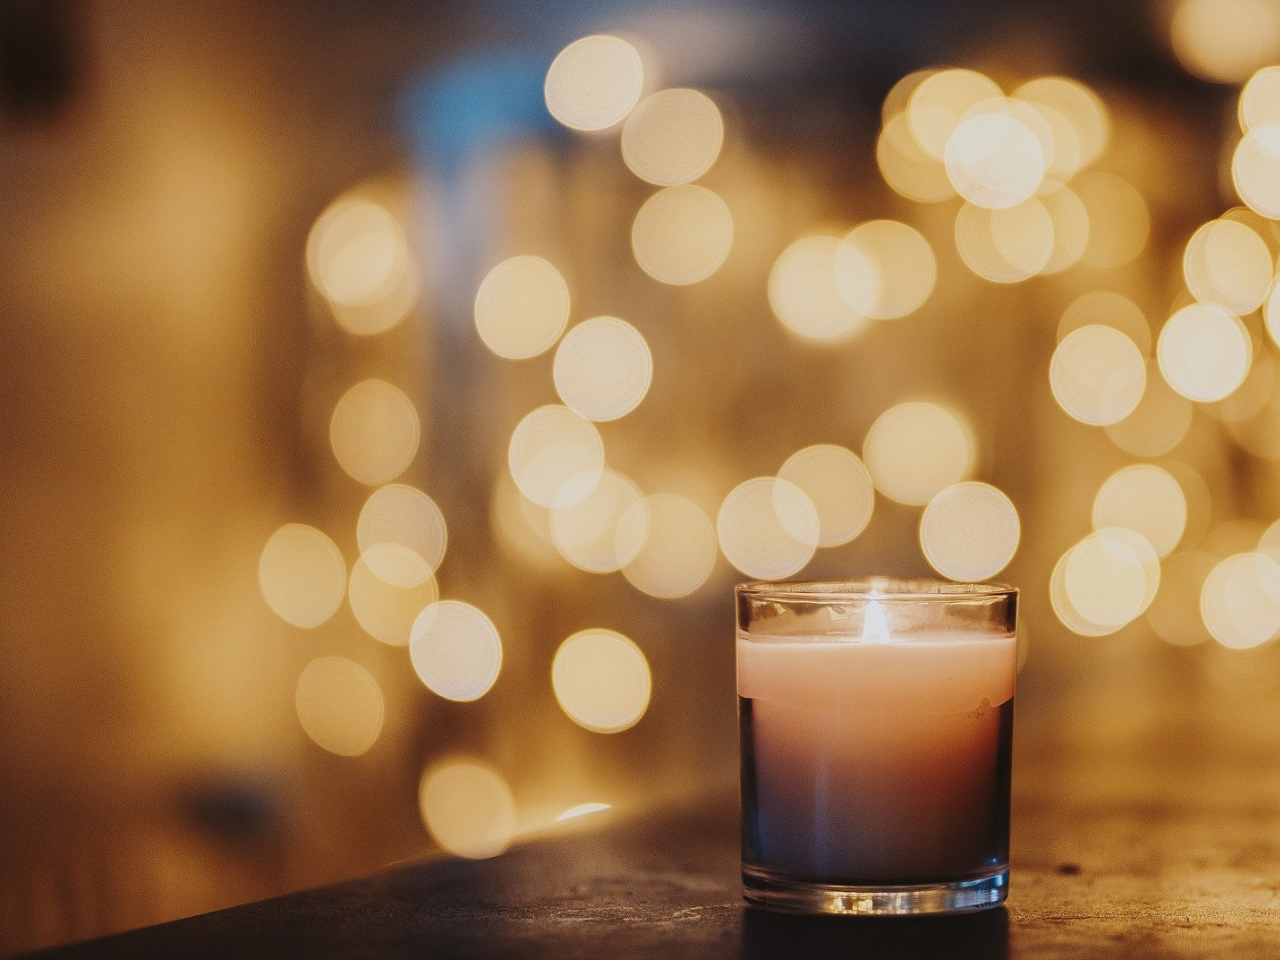 candle and Christmas lights during simbang gabi